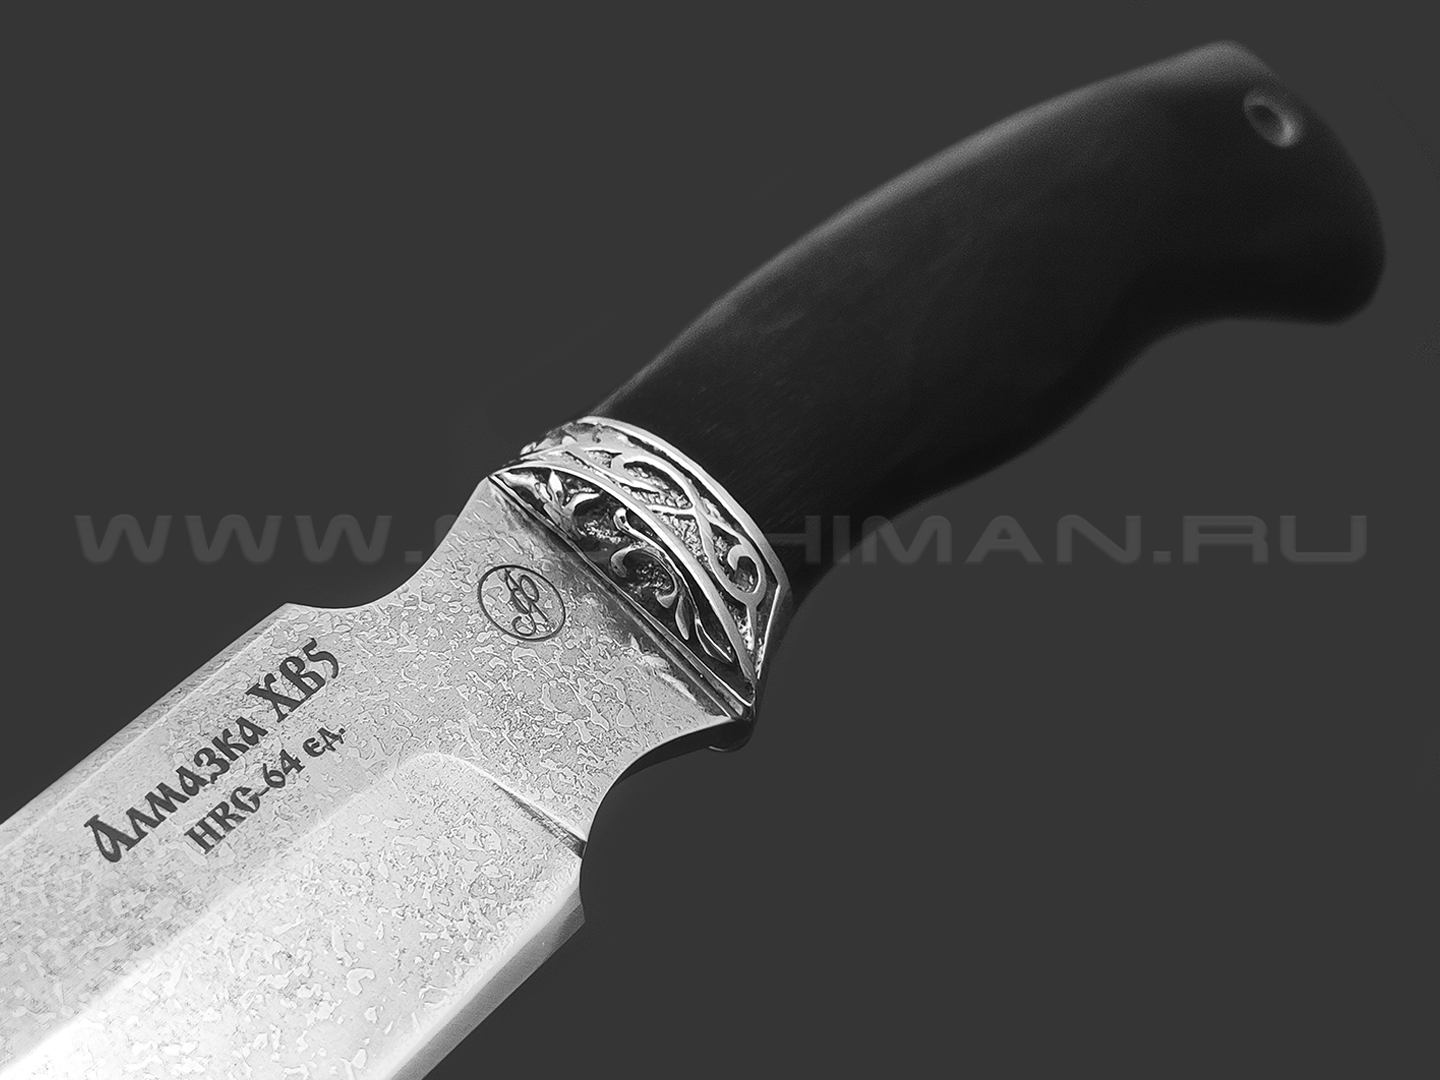 Нож "Рысь-М" сталь Алмазка ХВ5, рукоять дерево граб, мельхиор (Фурсач А. А.)